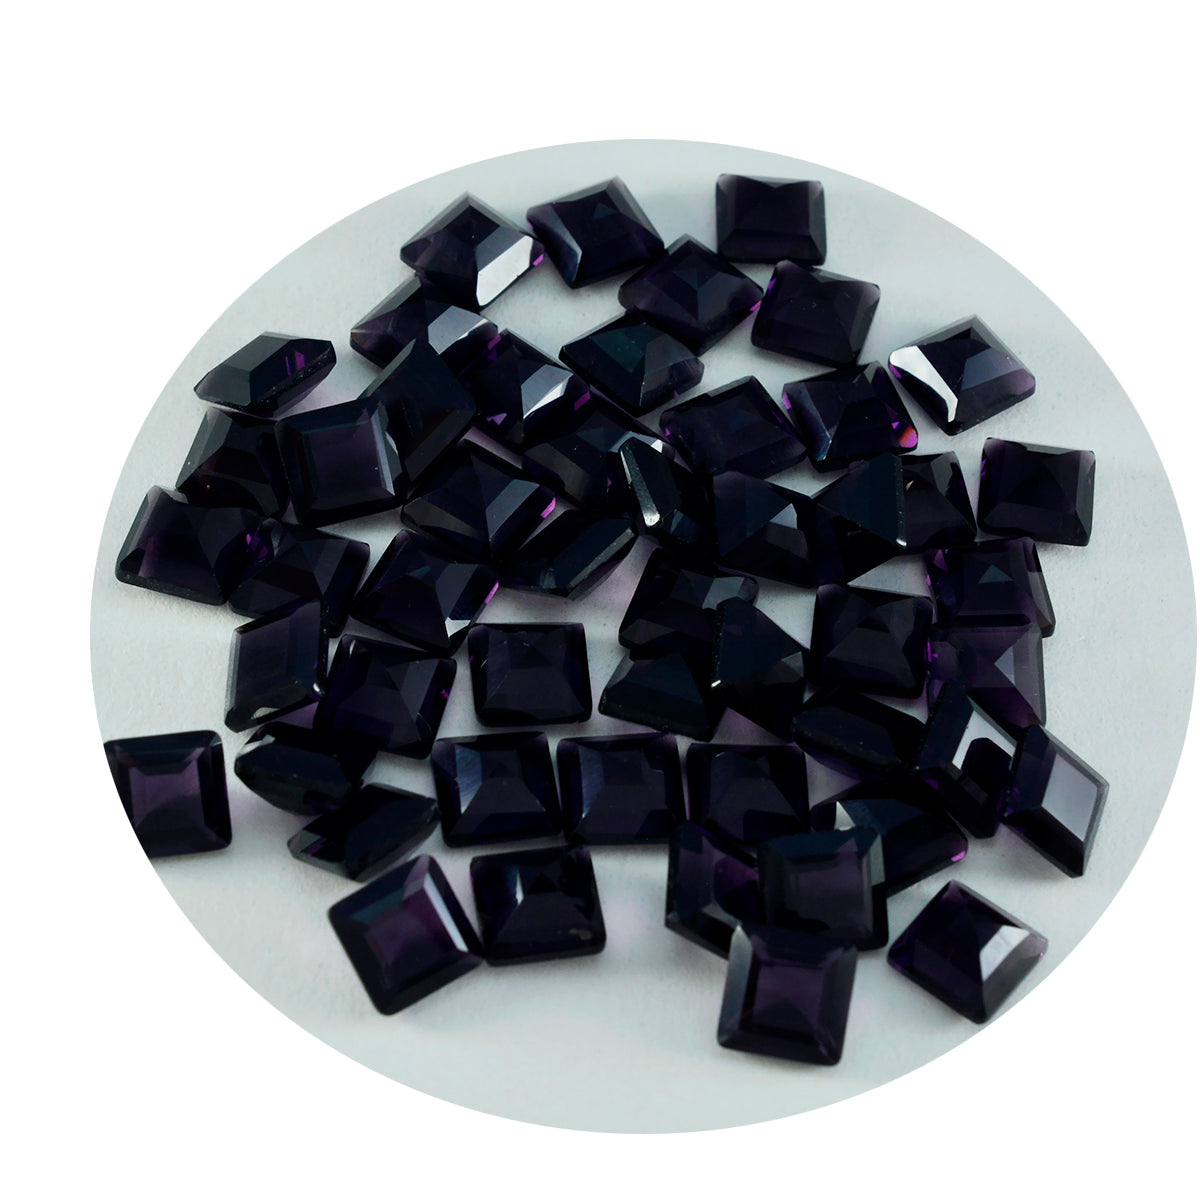 riyogems 1 шт. фиолетовый аметист cz ограненный 7x7 мм камень квадратной формы превосходного качества